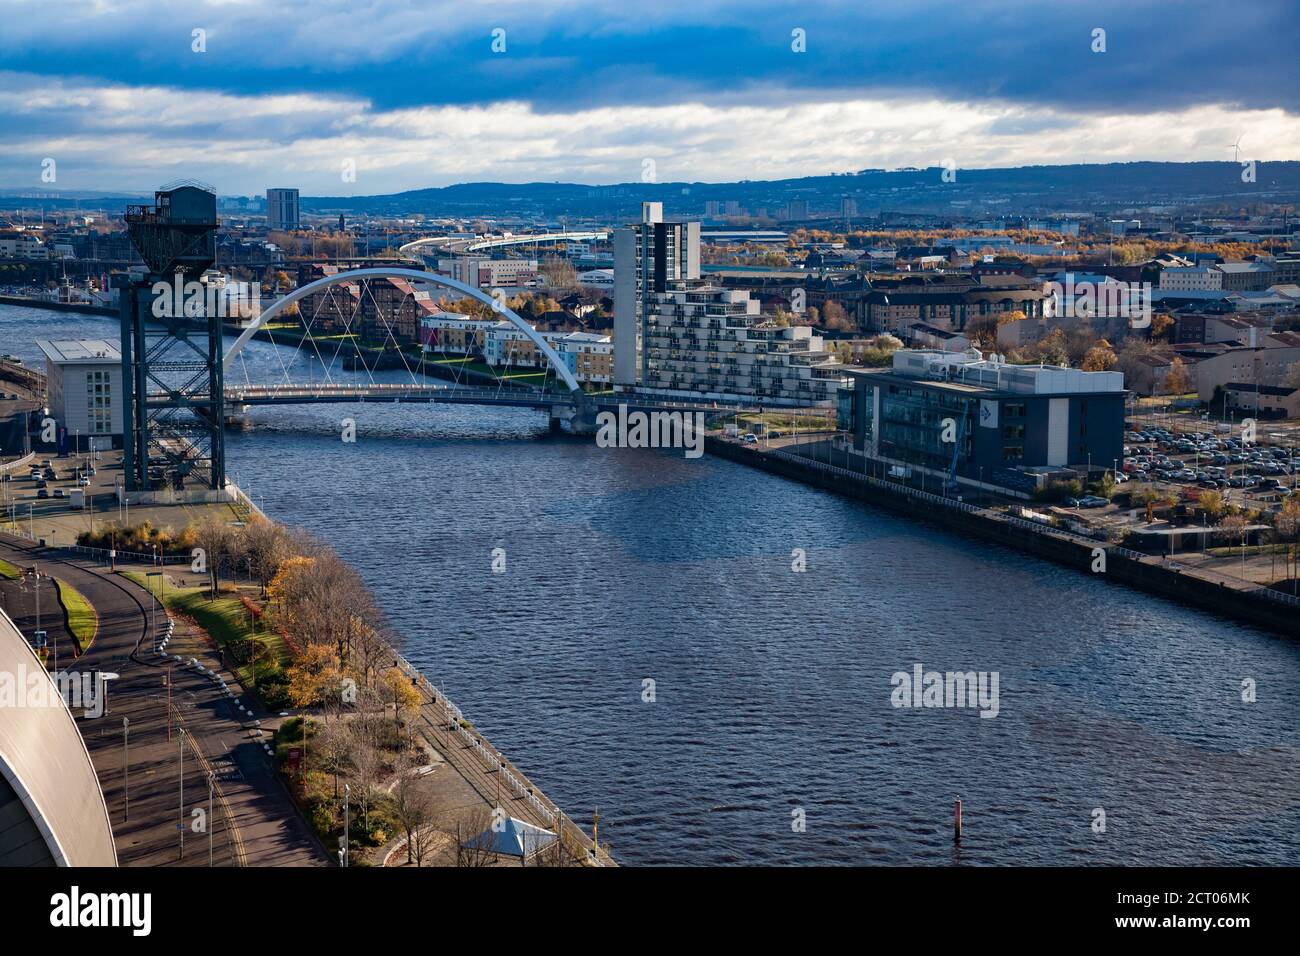 Glasgow / Écosse - 13 novembre 2013 : vue d'automne. Le remblai de la rivière Clyde, l'eau et le pont Squinty. Panorama aérien. Ciel bleu avec nuages. Banque D'Images